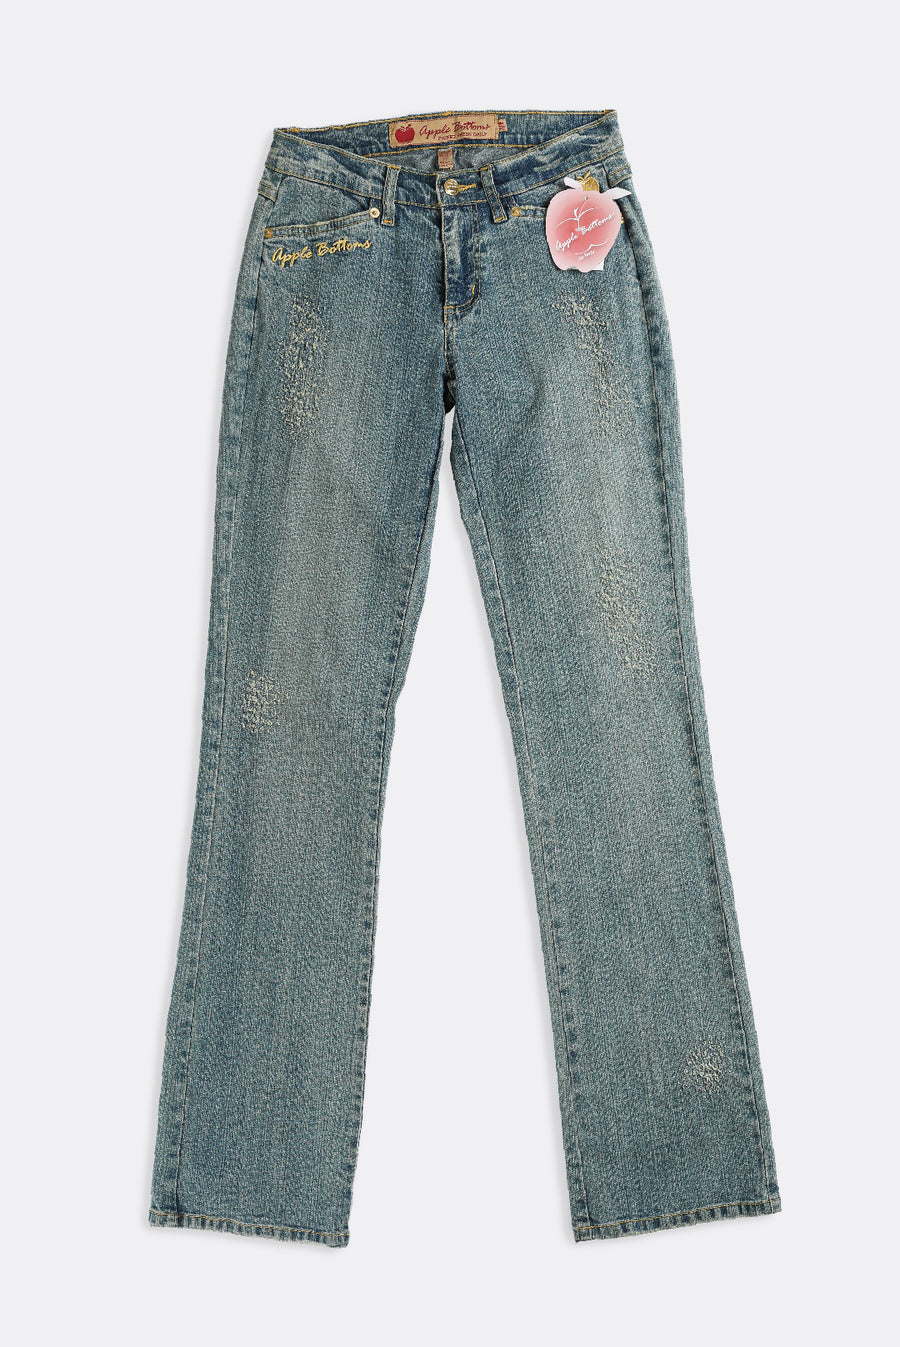 Deadstock Apple Bottom Distressed Denim Pants - W28, W30